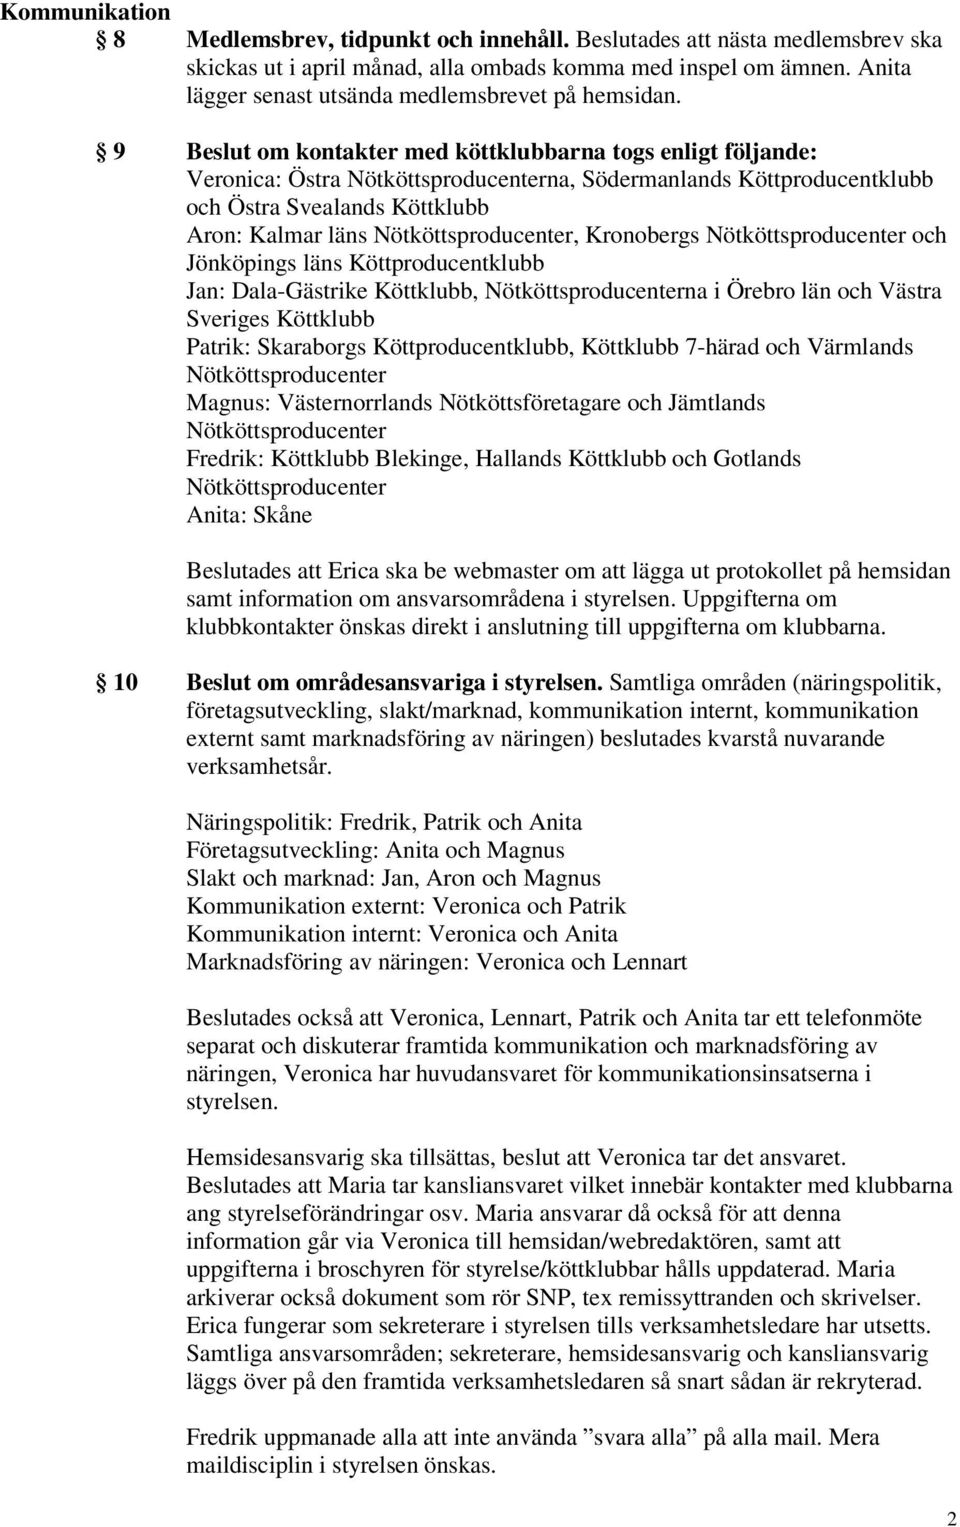 9 Beslut om kontakter med köttklubbarna togs enligt följande: Veronica: Östra na, Södermanlands Köttproducentklubb och Östra Svealands Köttklubb Aron: Kalmar läns, Kronobergs och Jönköpings läns